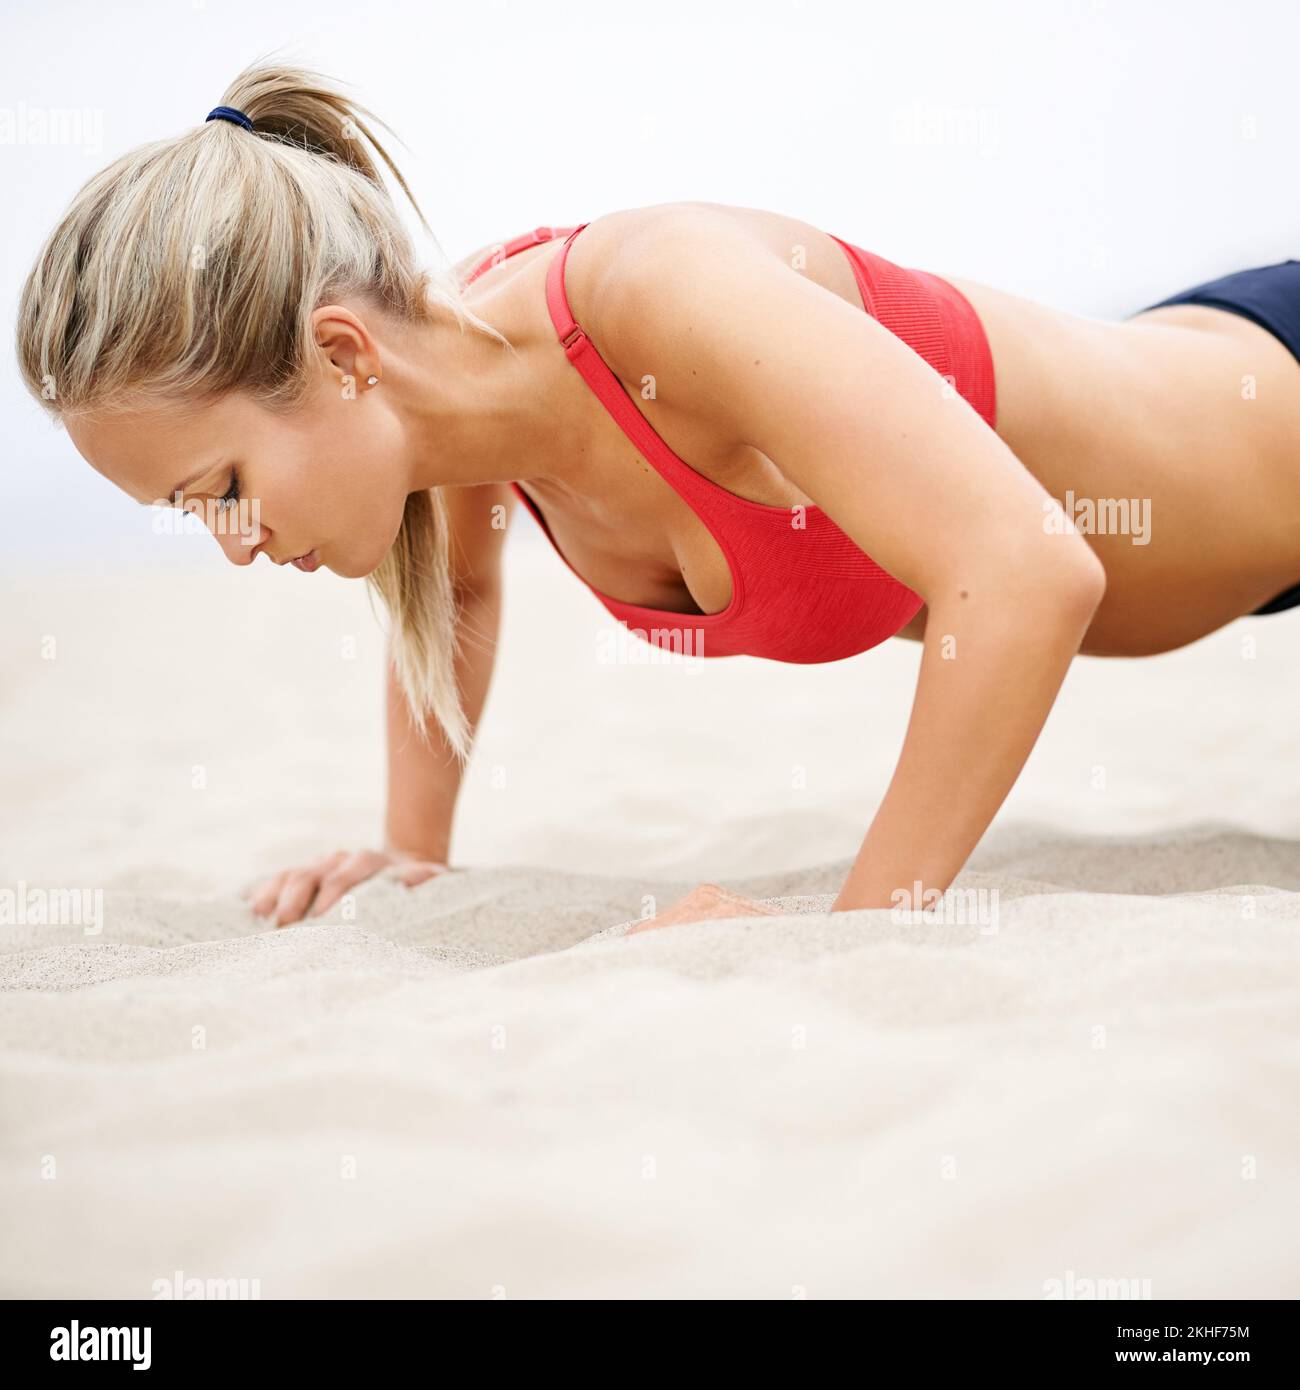 Du gehst immer an deine Grenzen. Eine junge Frau in Sportkleidung, die Liegestütze am Strand macht. Stockfoto